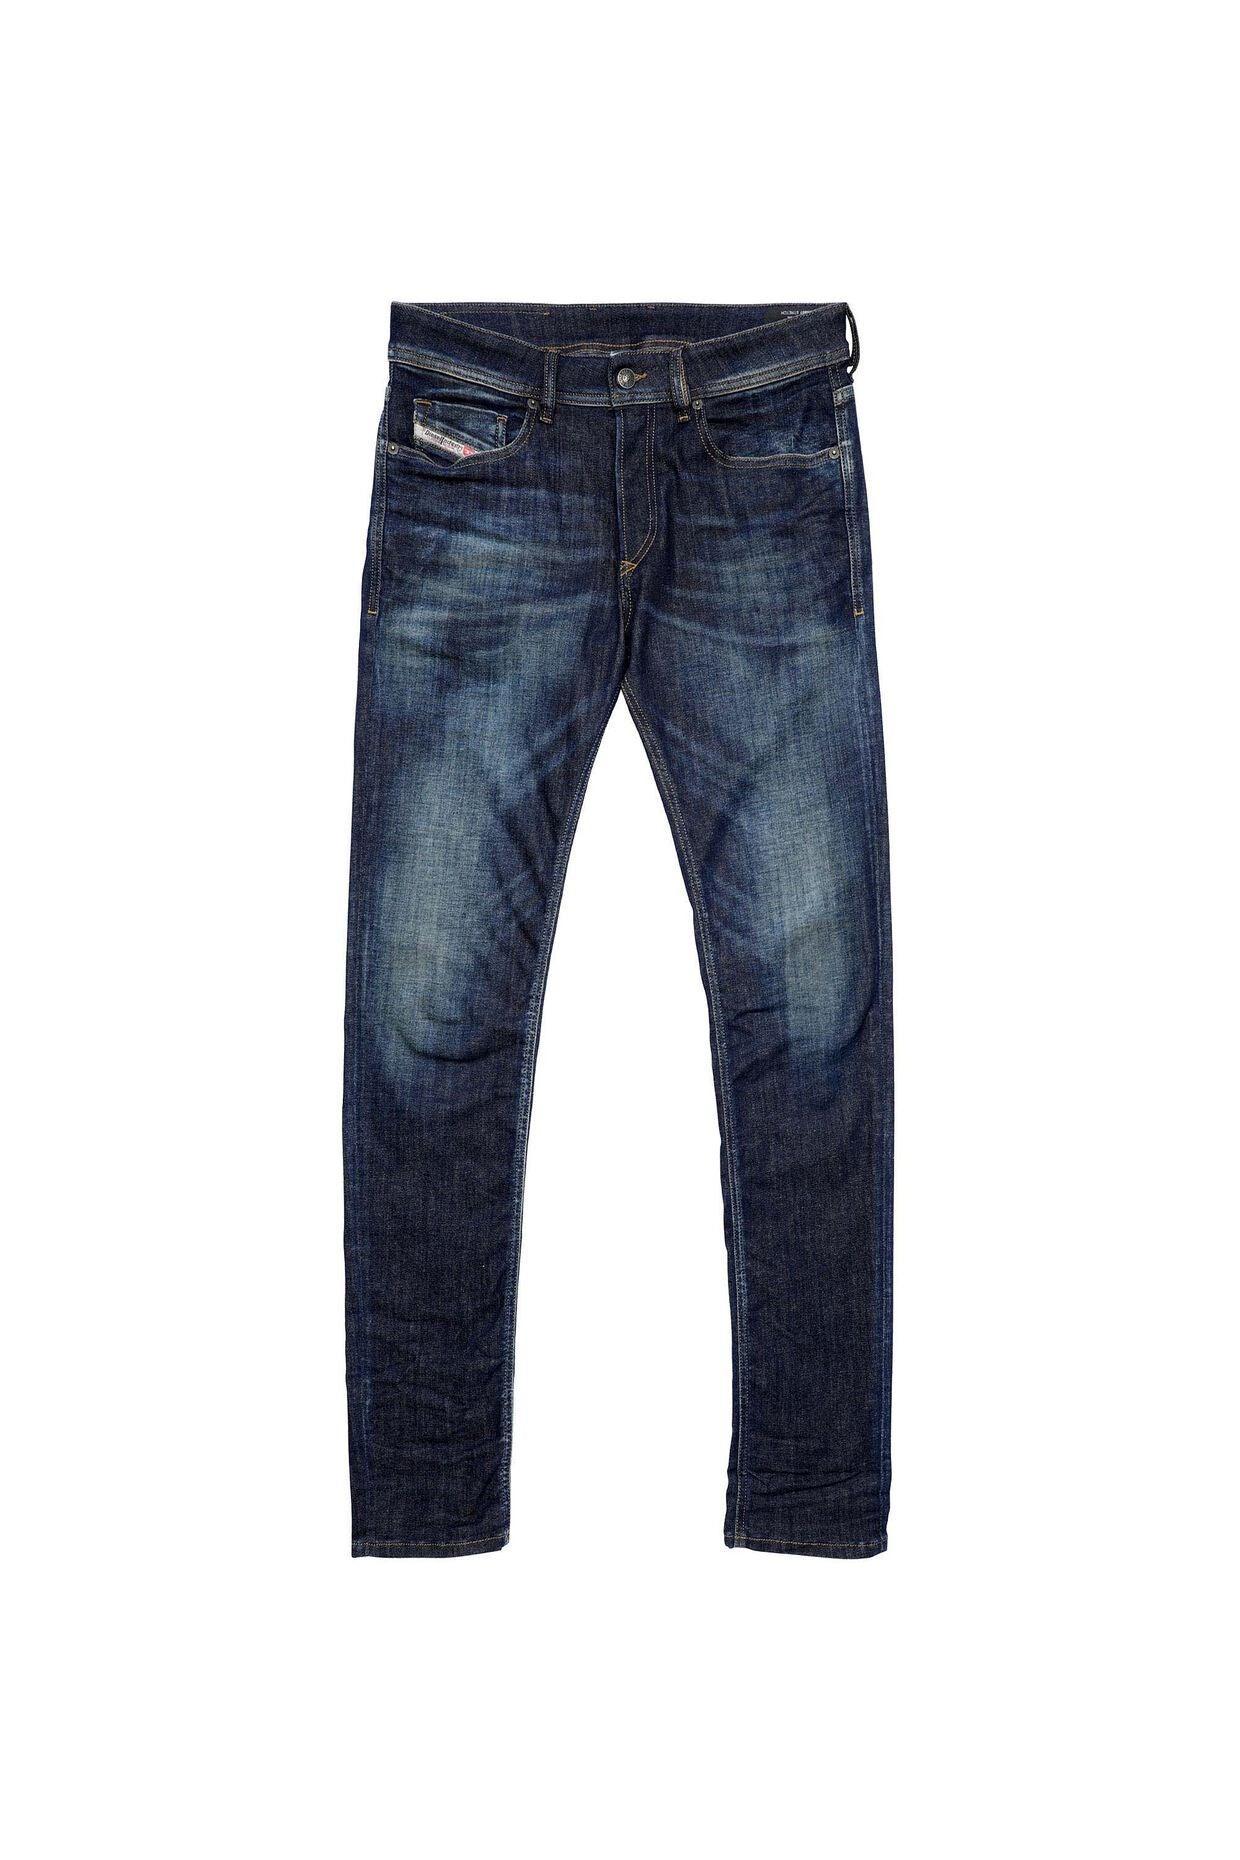 Diesel Jeans Sleenker 09B07 - Skinny Jeans - tiendadicons.com